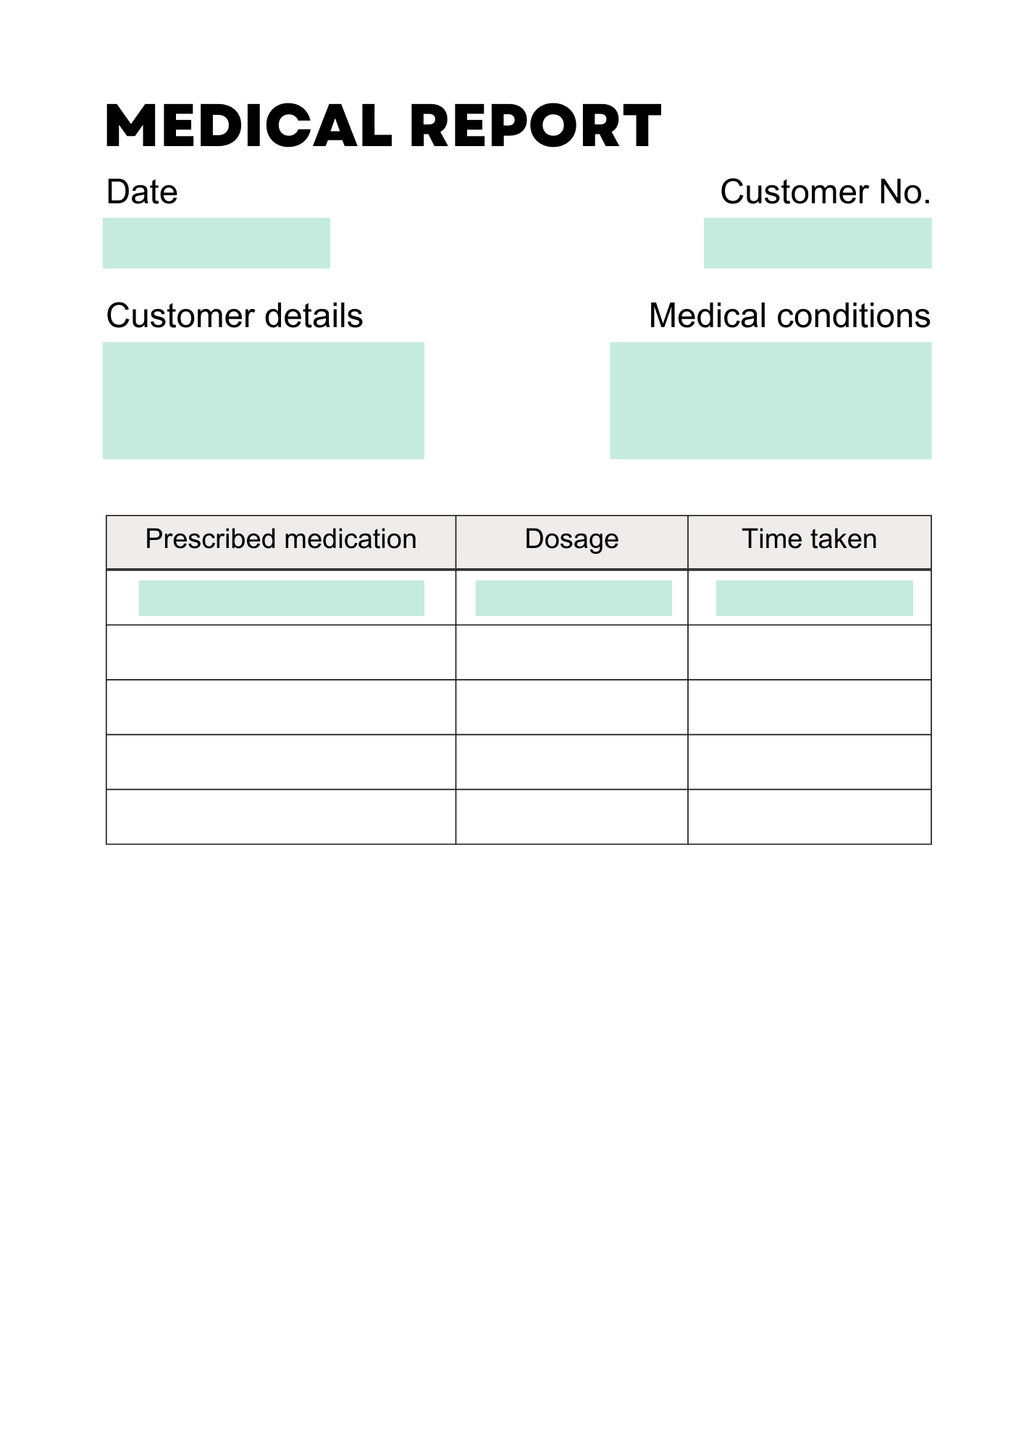 a visual representing a standard medical report